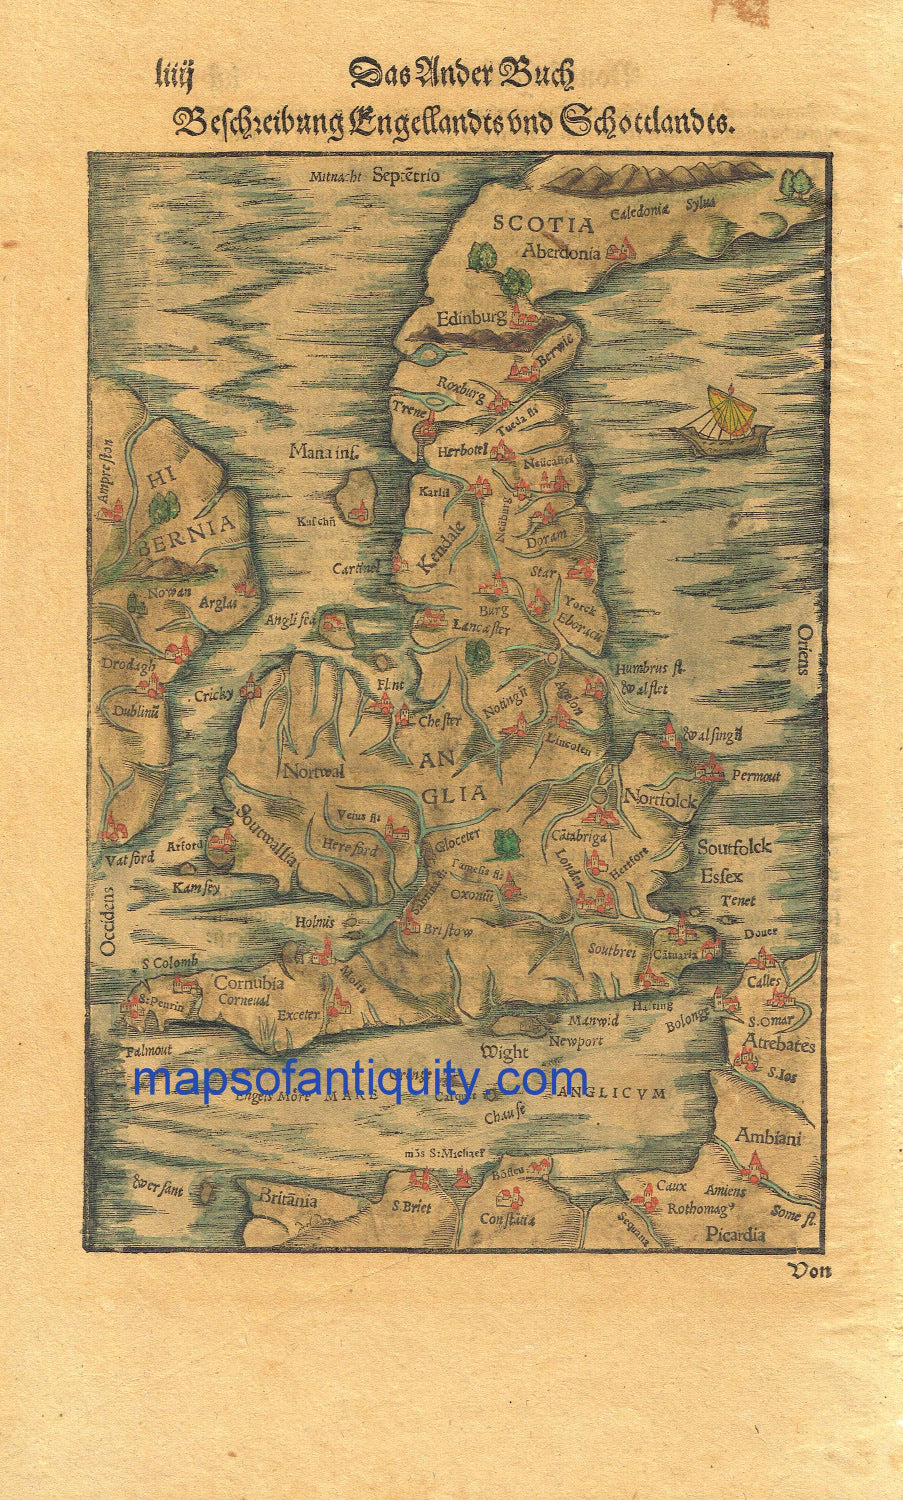 Antique-Hand-Colored-Map-Das-Ander-Buch-Beschreibung-Engellandts-und-Schottlandts-******-Europe-United-Kingdom-1598-Munster-Maps-Of-Antiquity